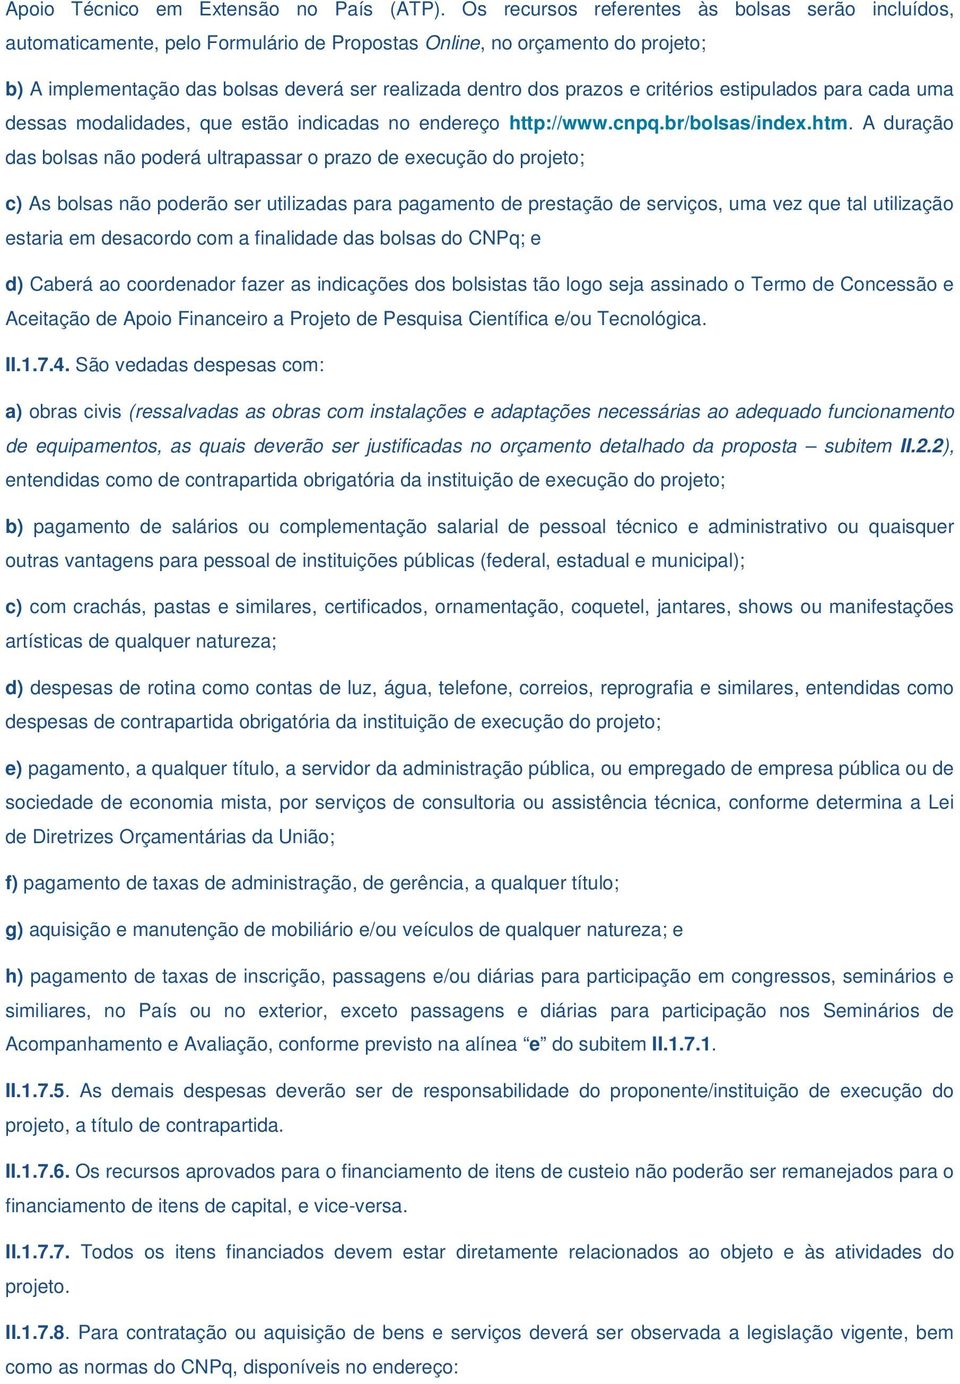 critérios estipulados para cada uma dessas modalidades, que estão indicadas no endereço http://www.cnpq.br/bolsas/index.htm.